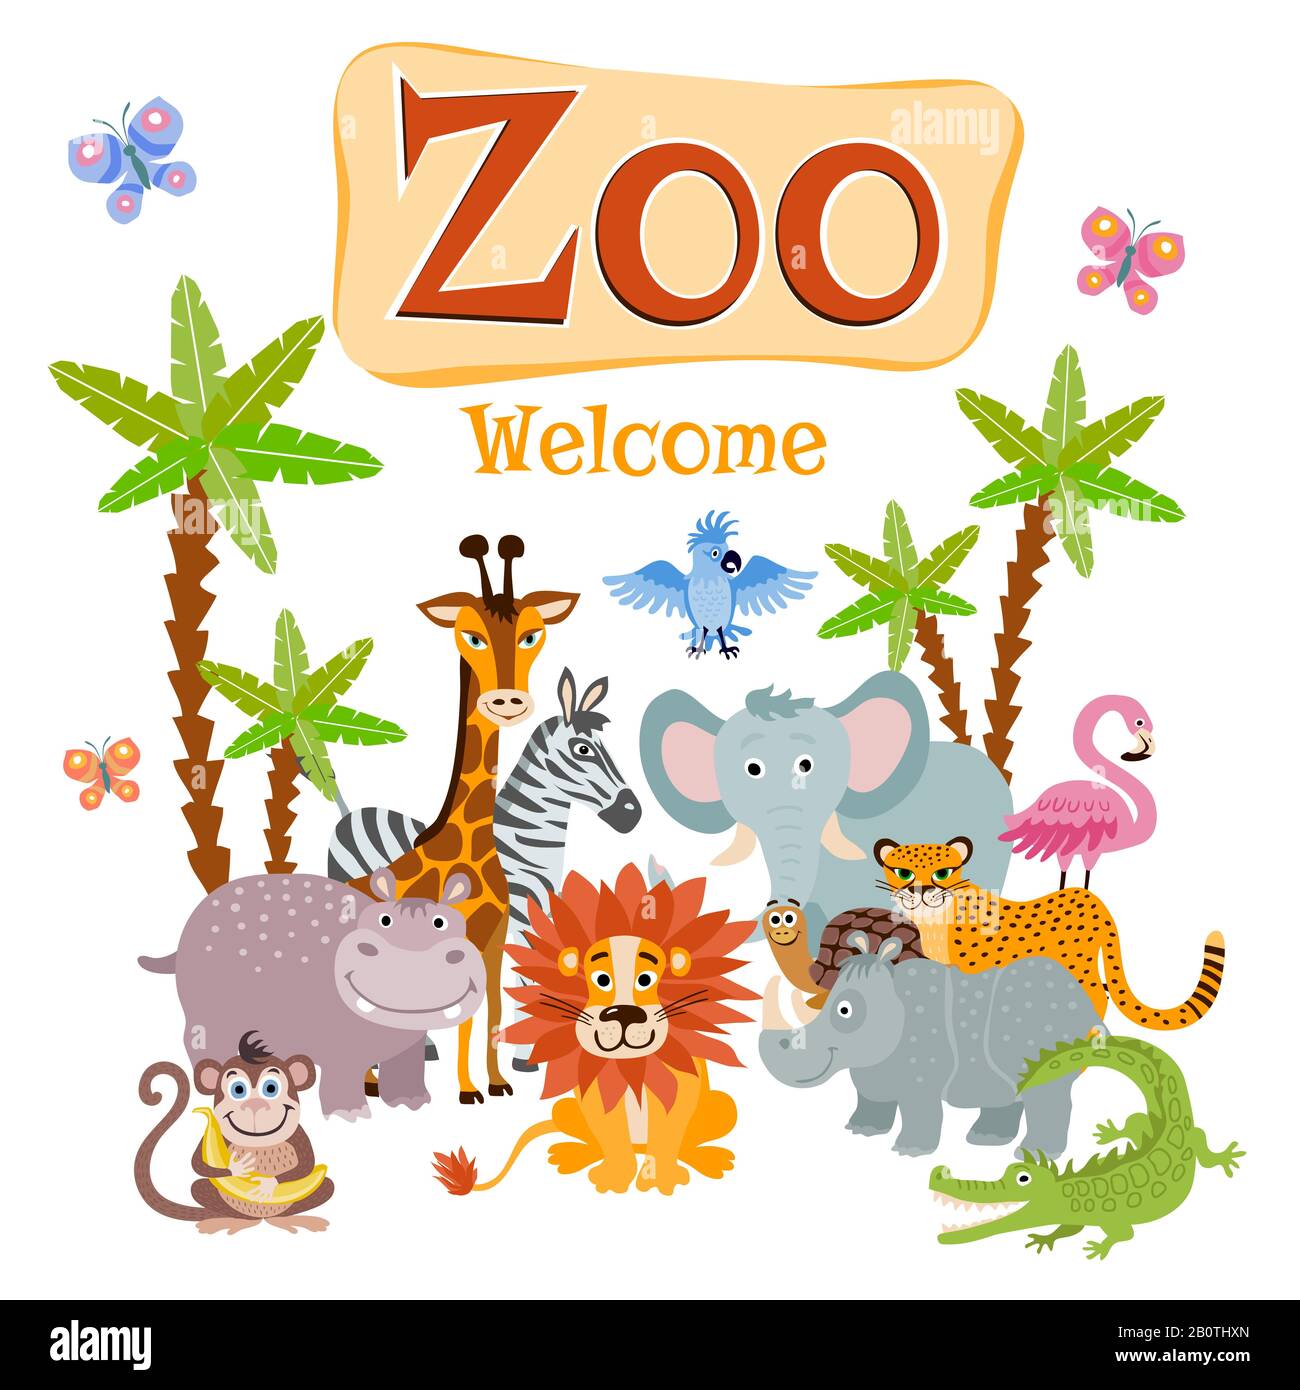 Zoo-Vektor-Illustration mit wilden Zeichentrick-Safari-Tieren. Banner willkommen Zoo, Tierzoo Nashorn und Flamingo Stock Vektor